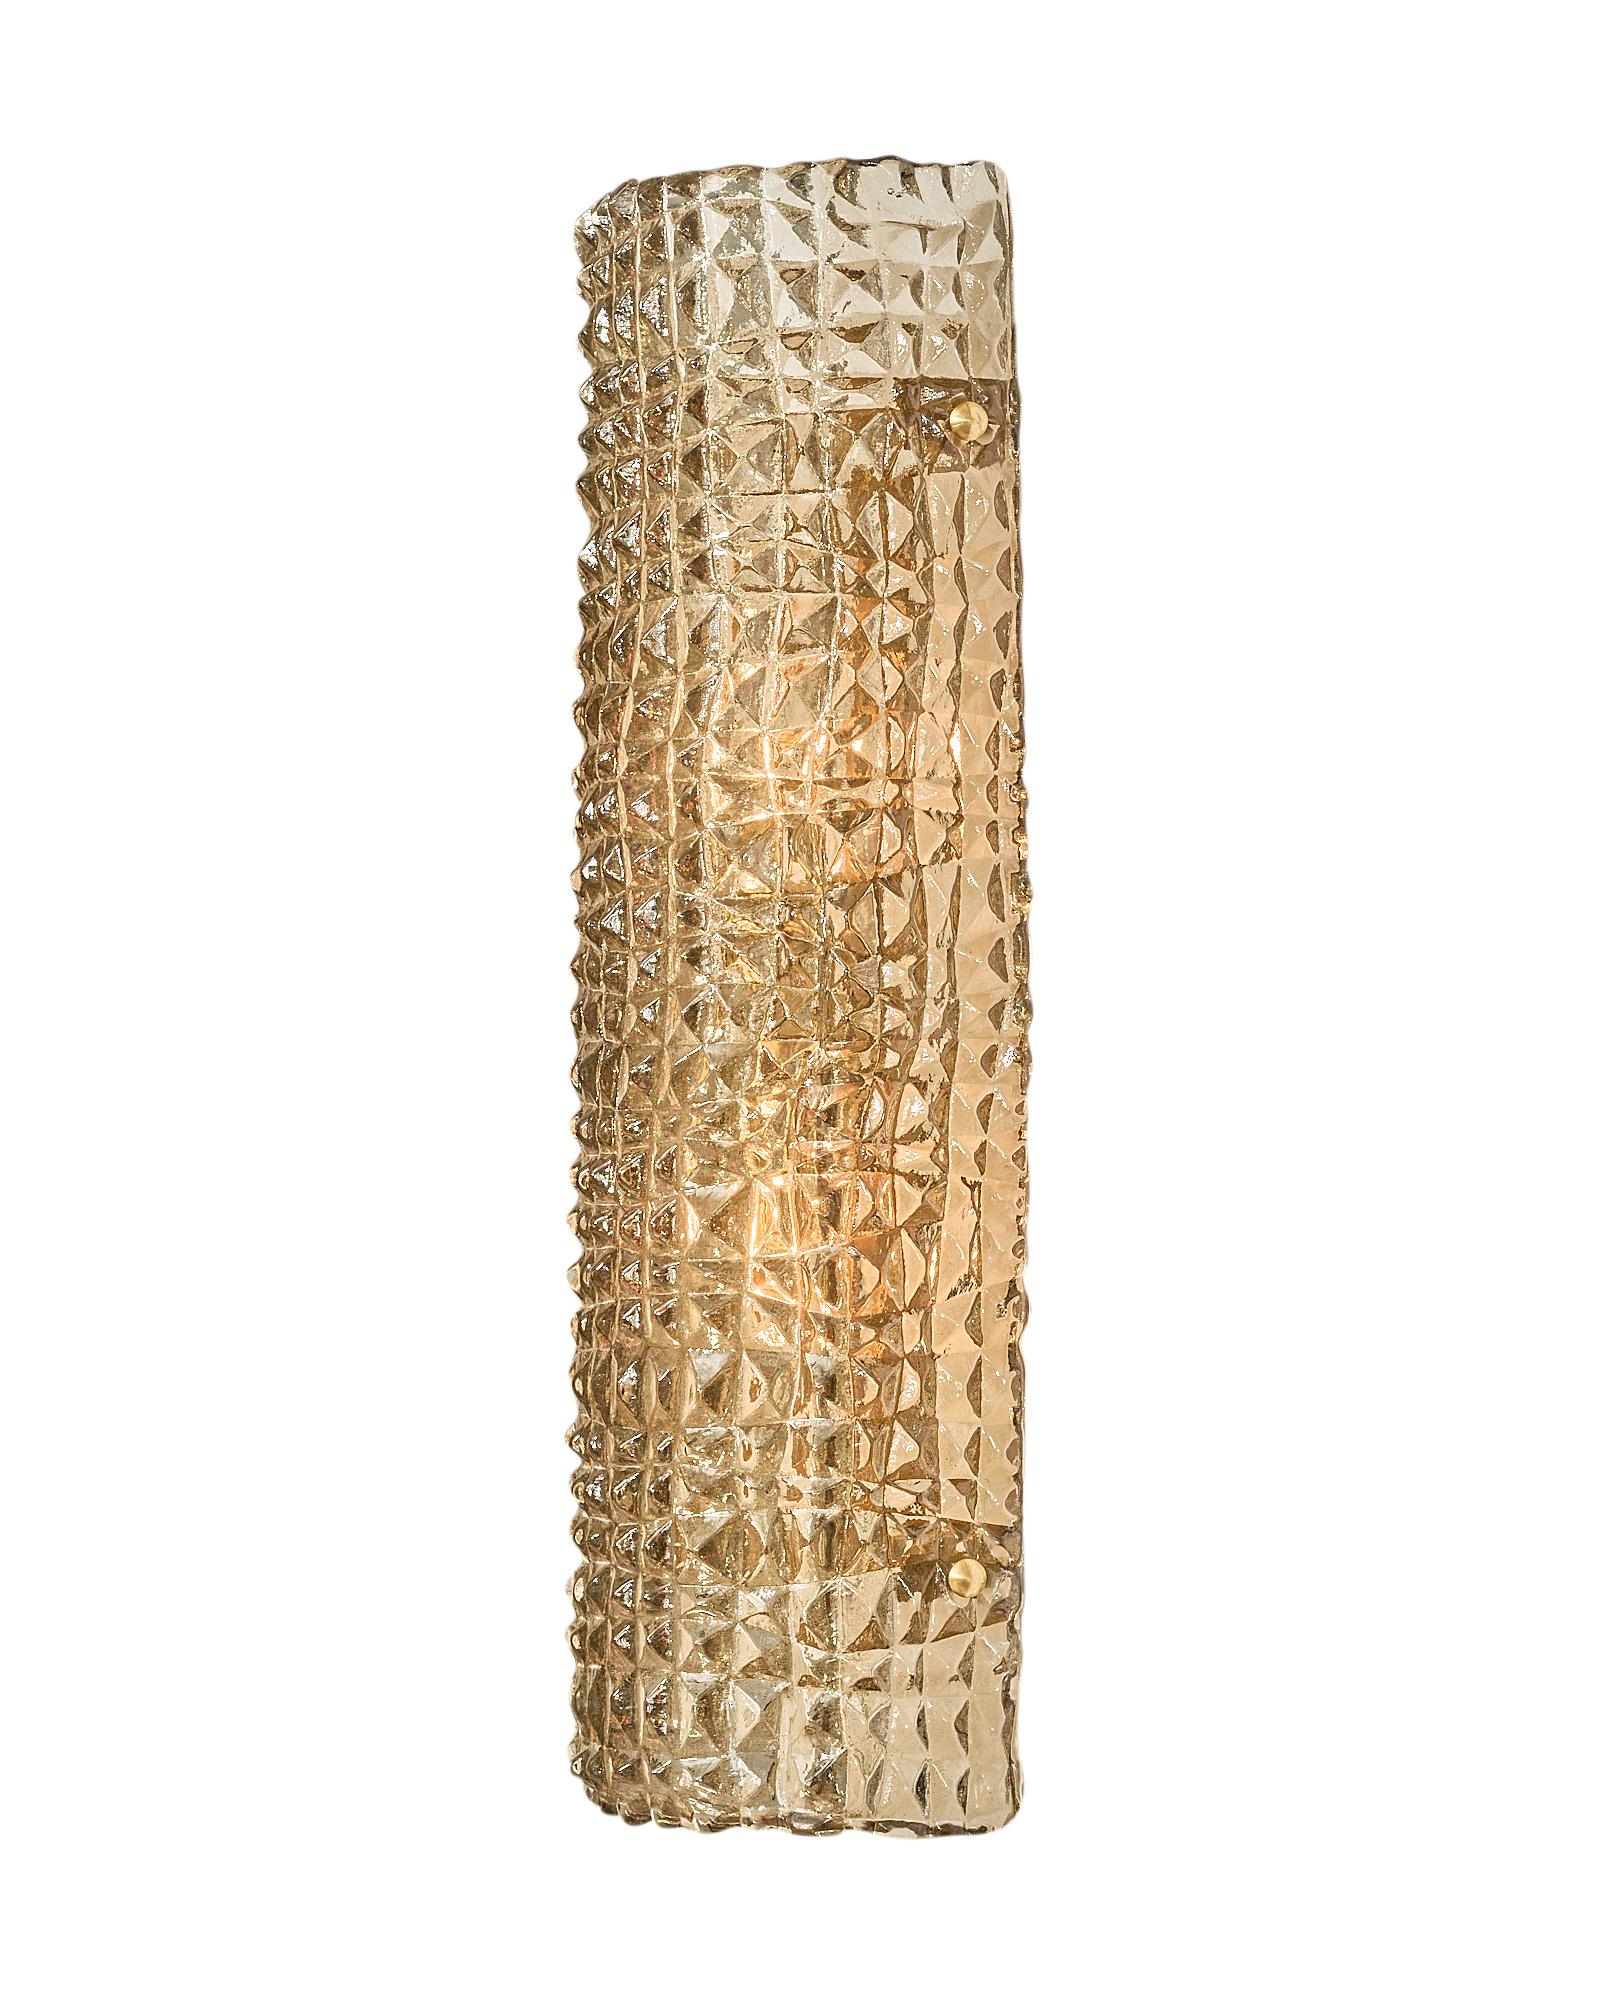 Contemporary Murano Glass “Alligatore” Sconces For Sale